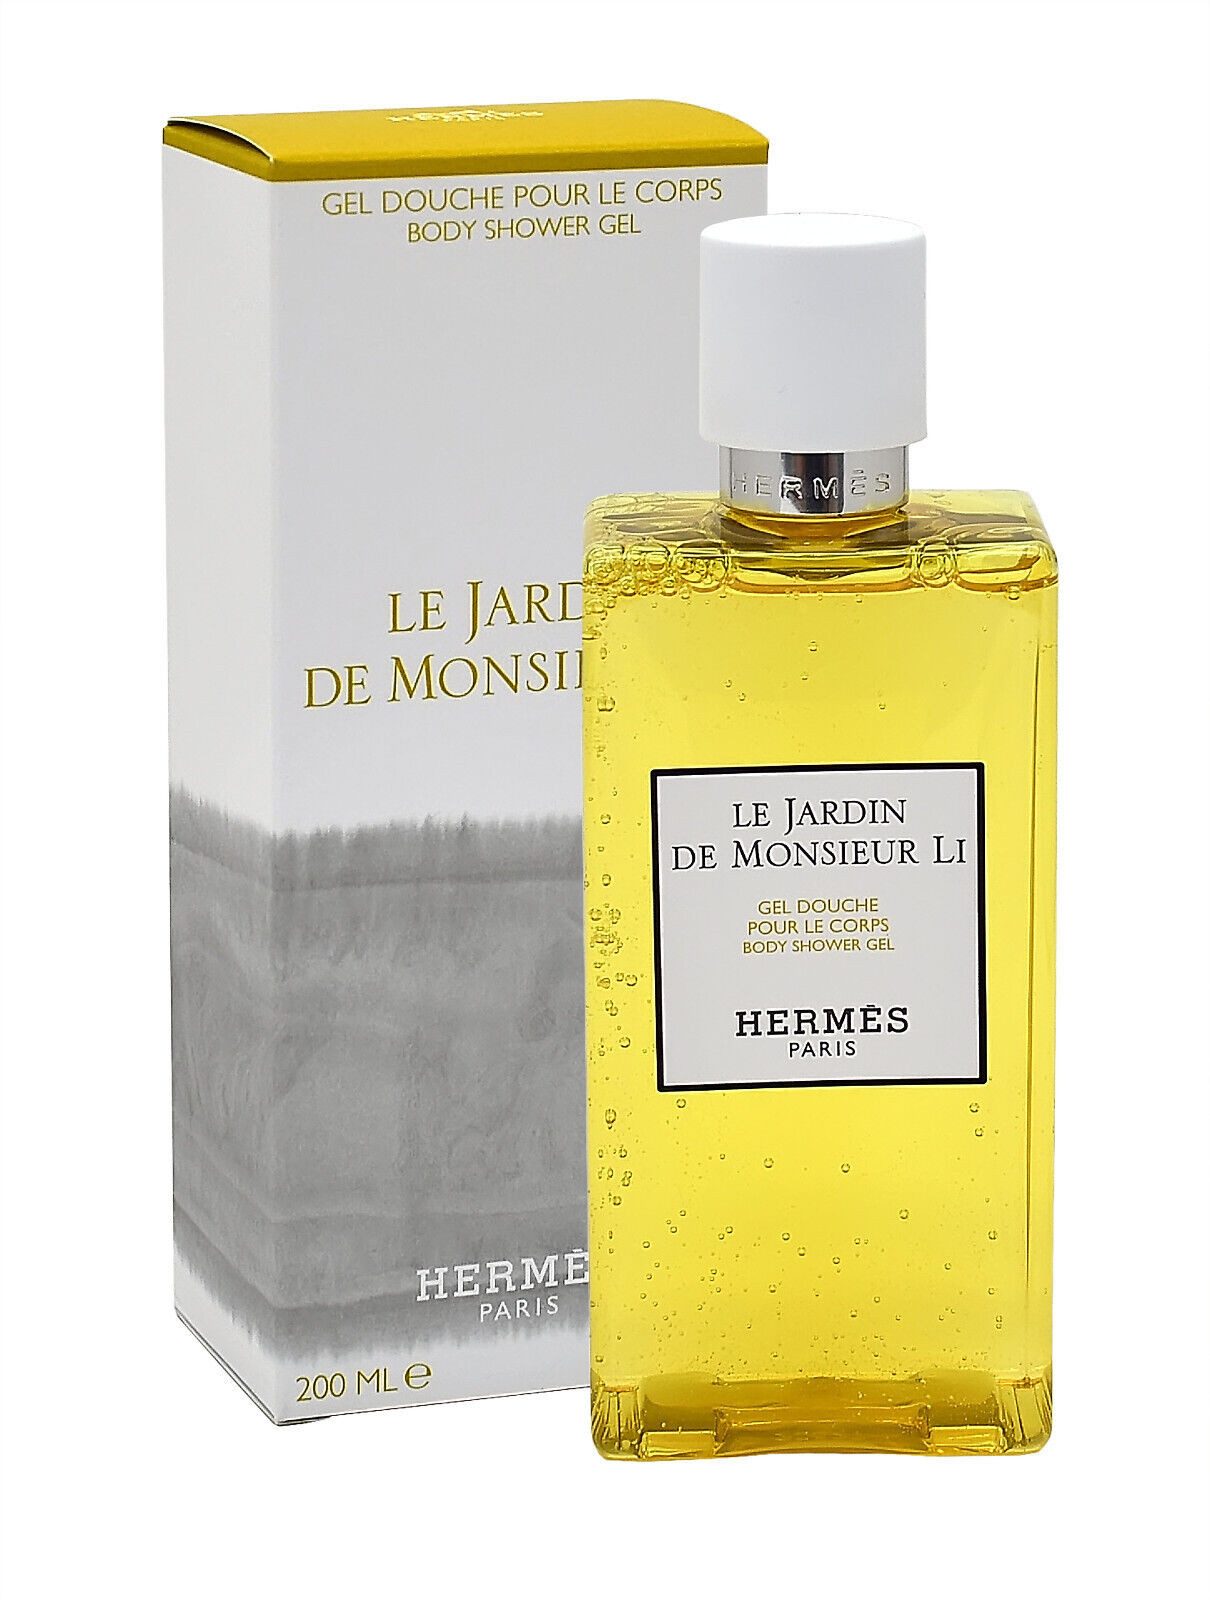 HERMÈS Duschgel Hermes Le Jardin De Monsieur Li Body Shower Gel 200ml